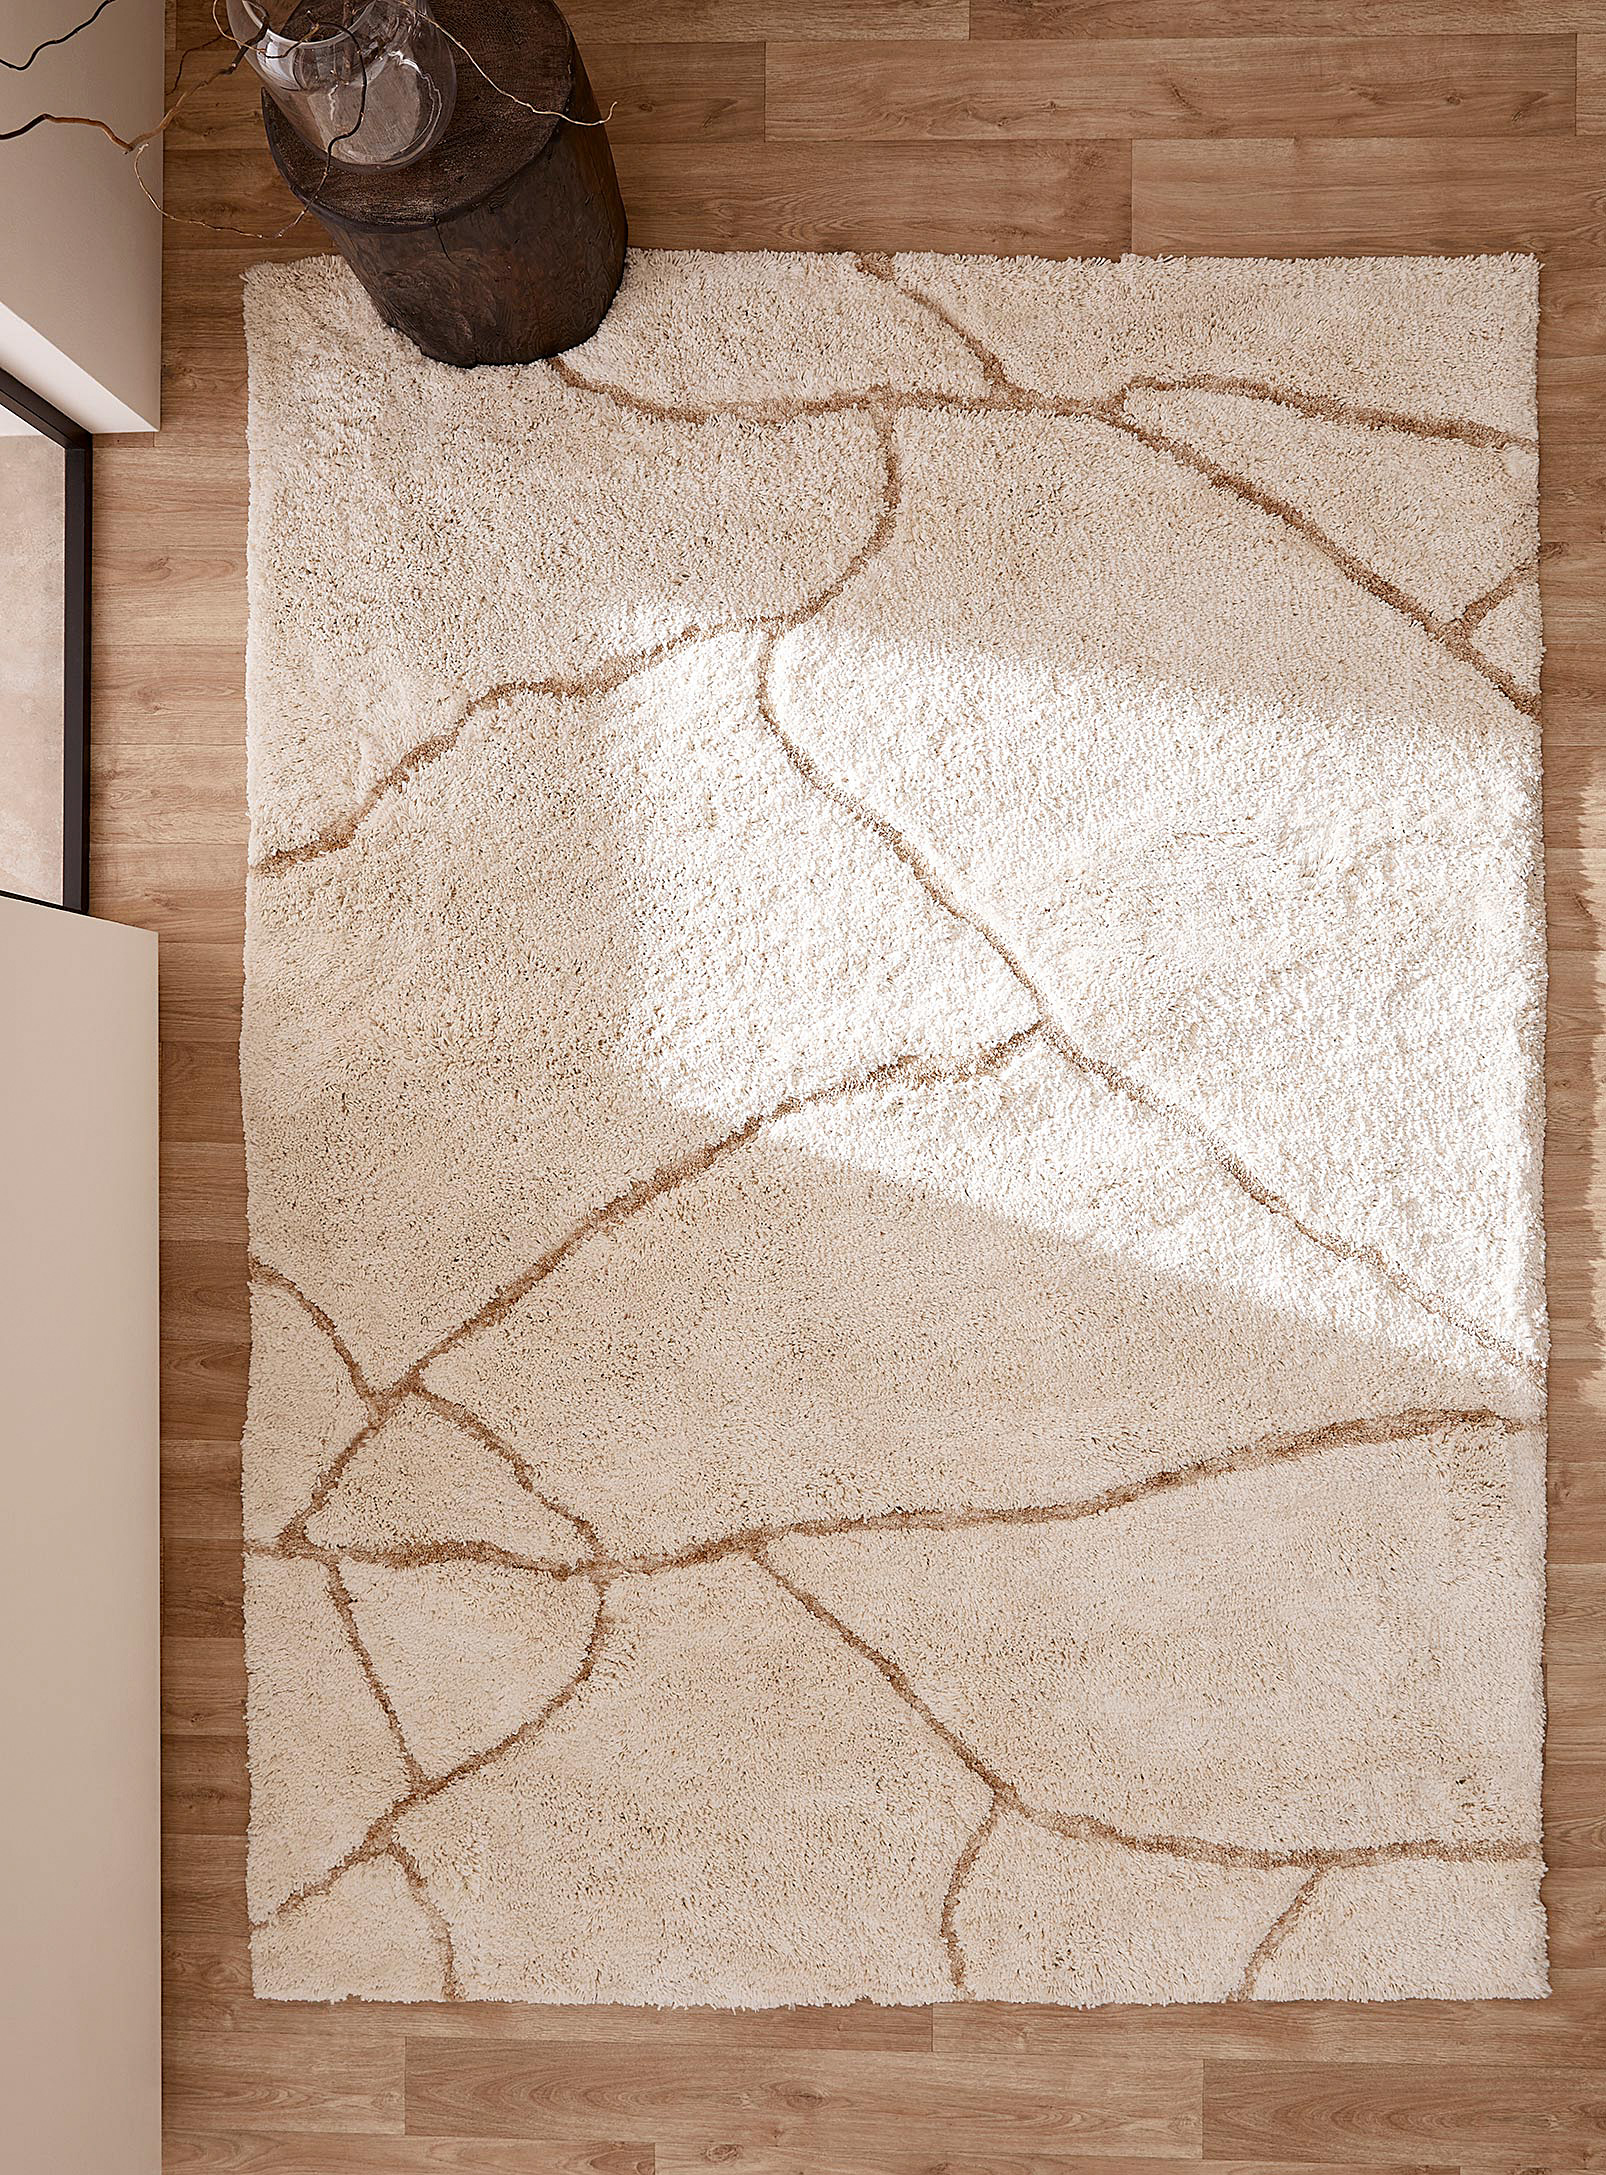 Simons Maison - Crackling stone shag rug See available sizes